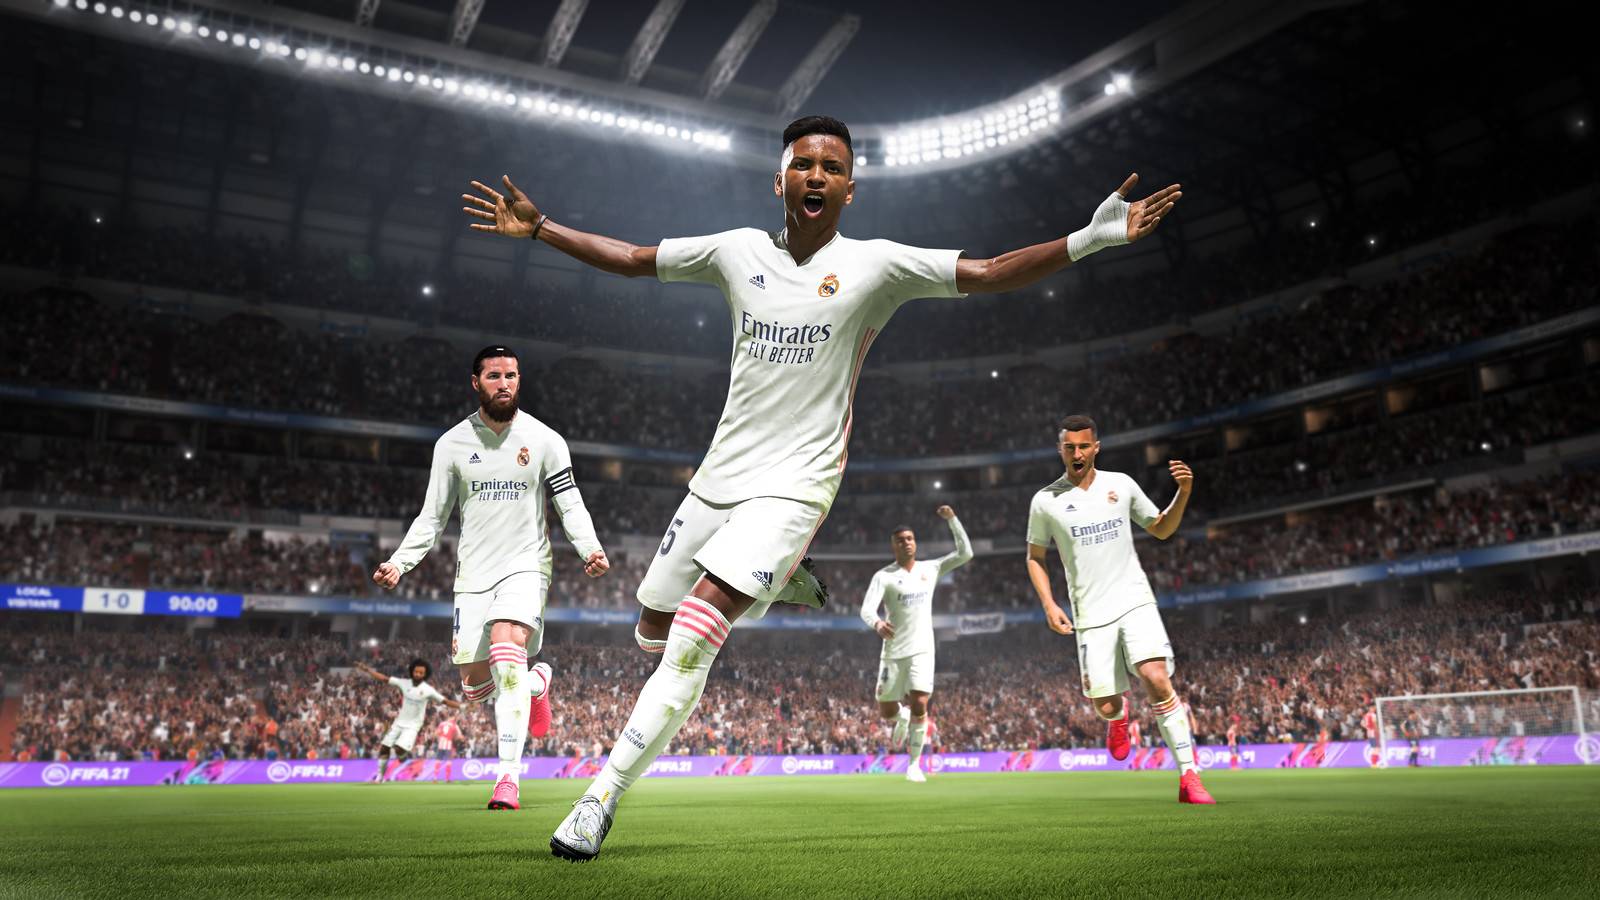 Jest nowa nazwa dla serii FIFA? EA oficjalnie ją zarejestrowało! Jak teraz będzie się nazywać najpopularniejsza gra piłkarska?